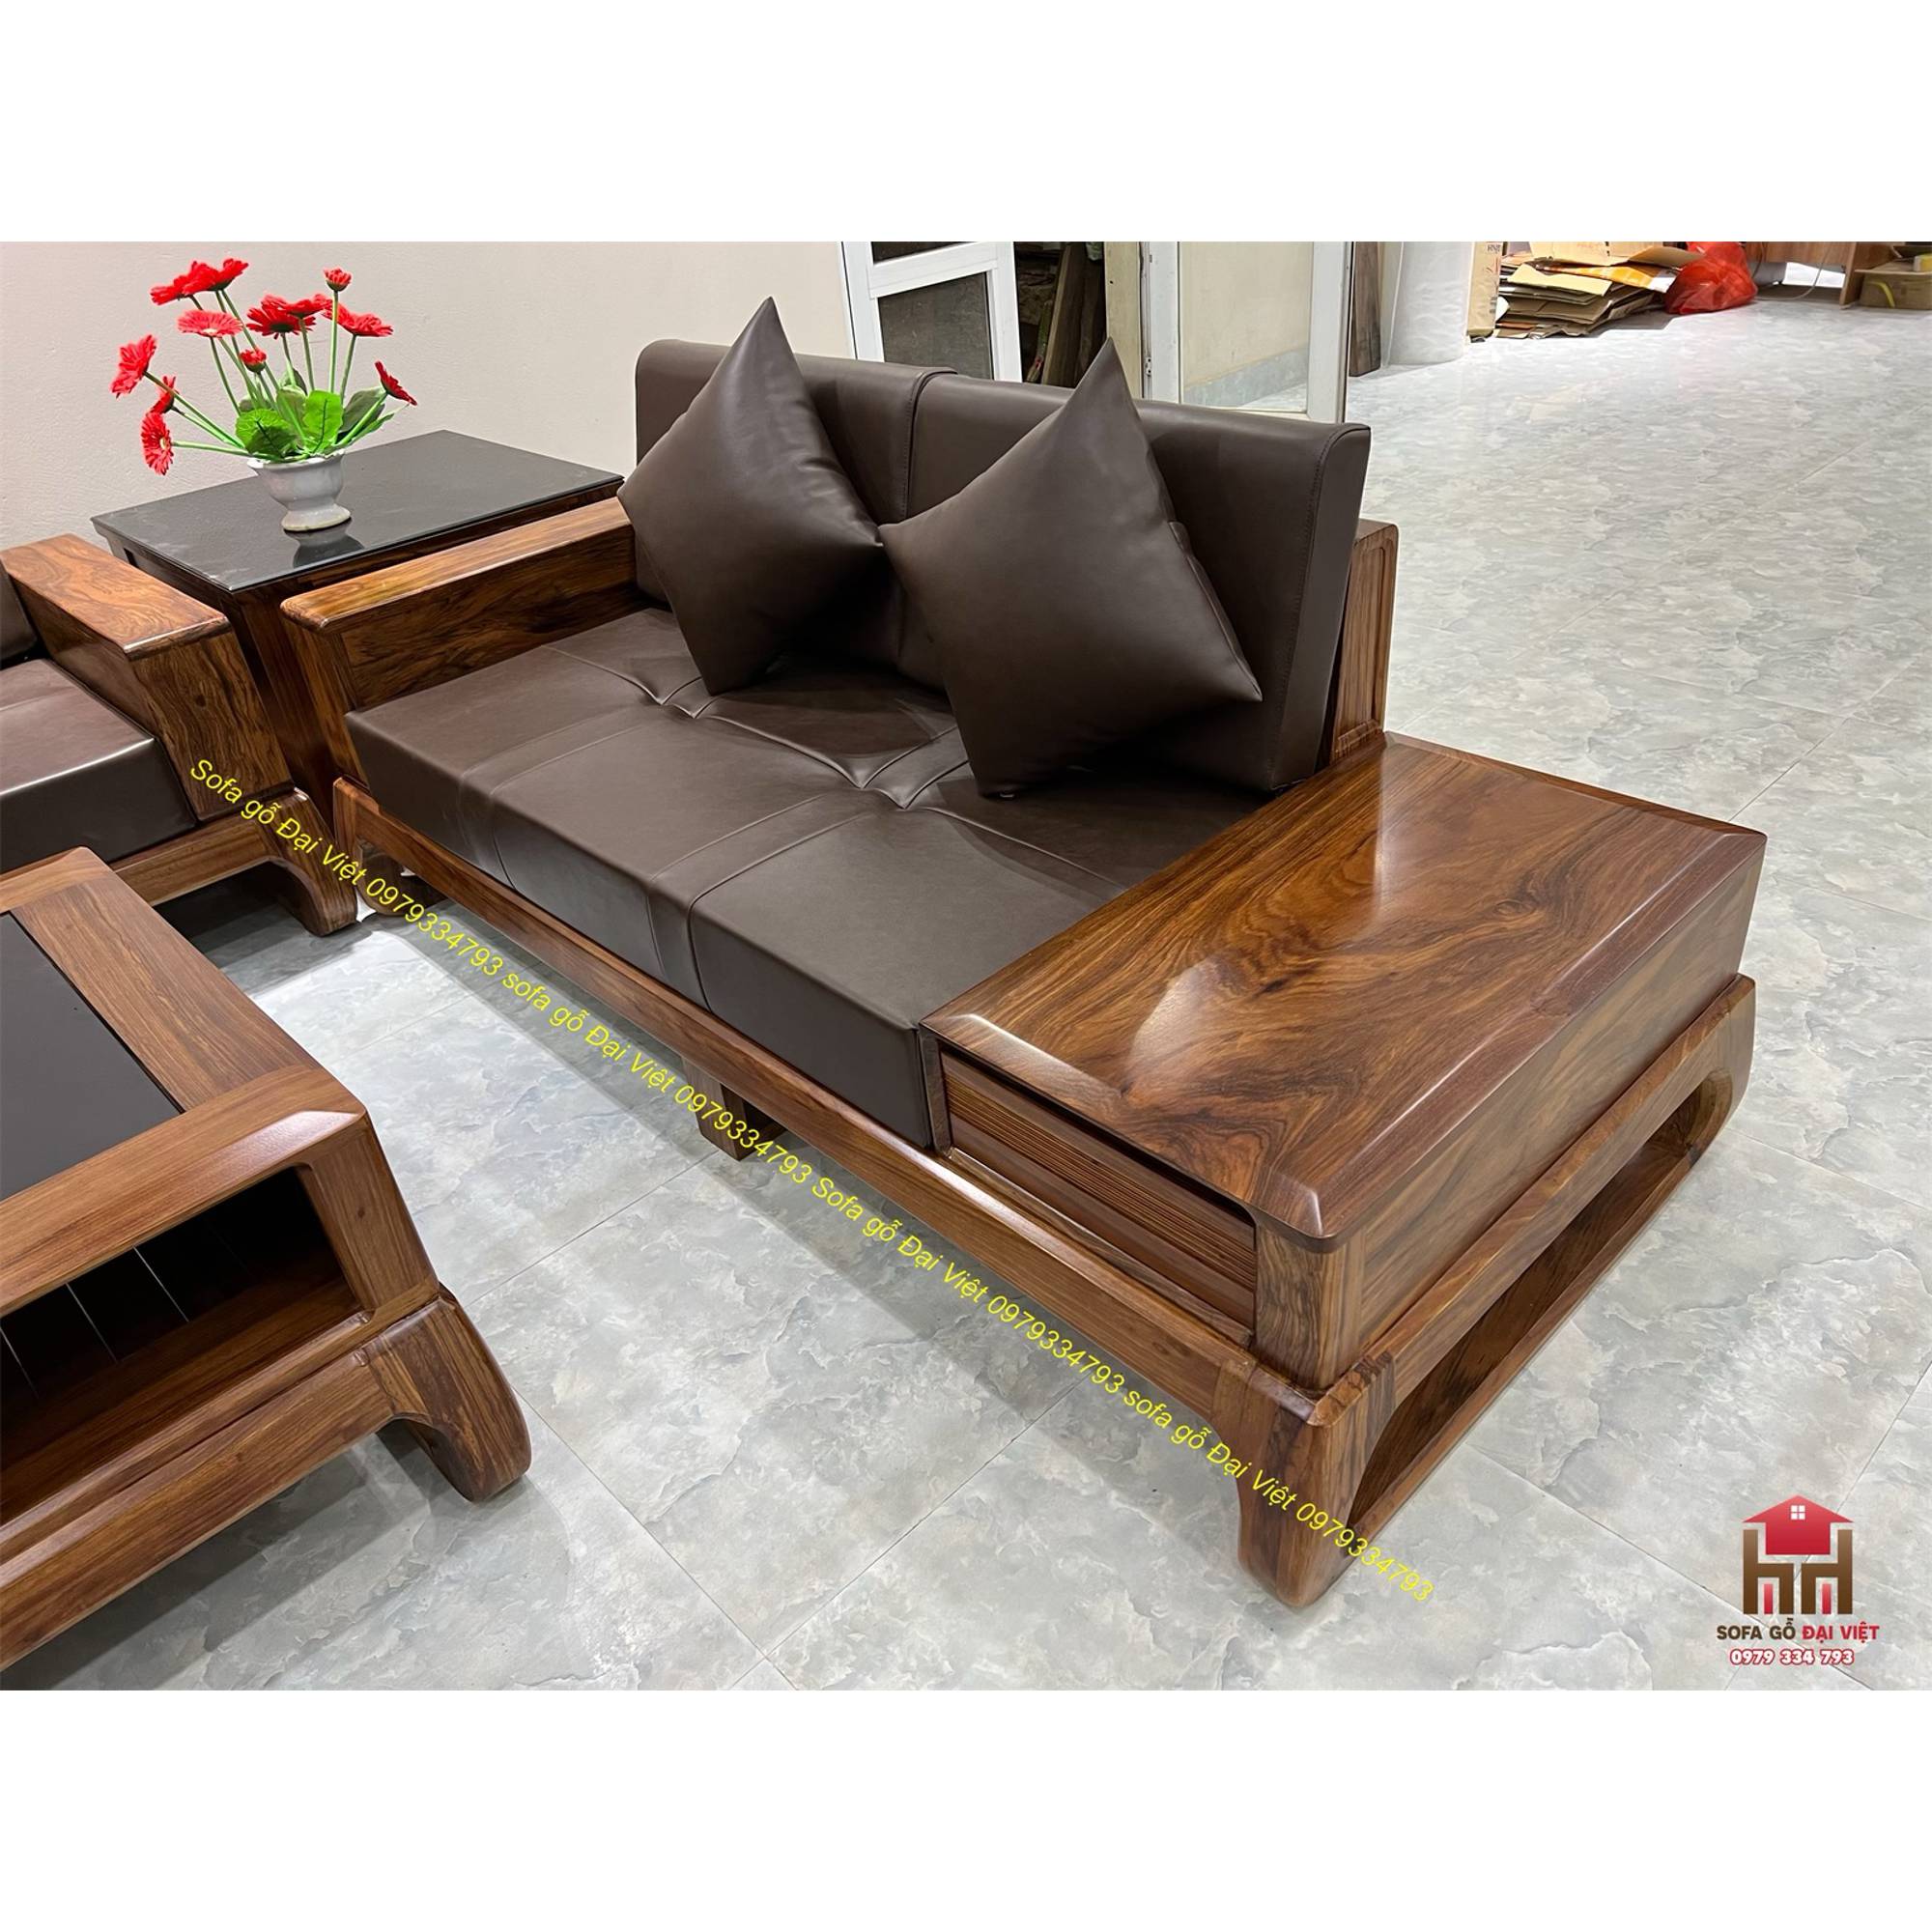 Sofa chân quỳ gỗ hương xám - sản phẩm đi liền với chất lượng